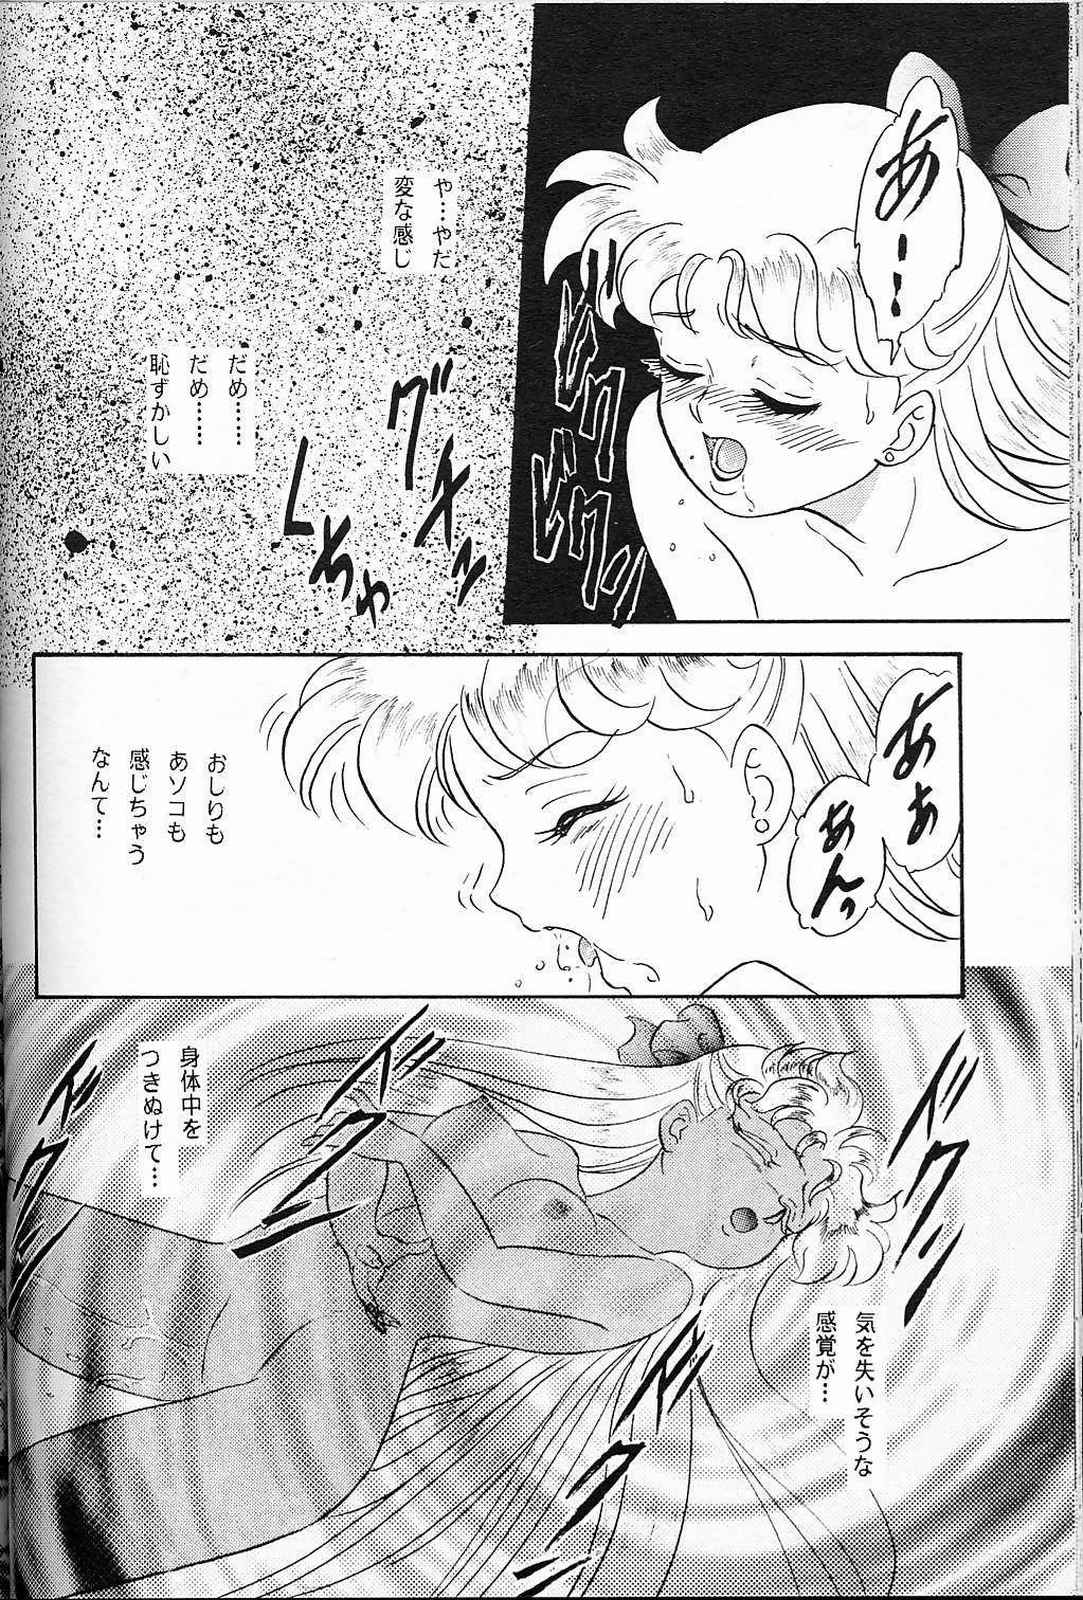 (SUPER3) [ちゃんどら、ランチBOX (幕の内勇)] LUNCH BOX 7 - Fairy Tale (美少女戦士セーラームーン)